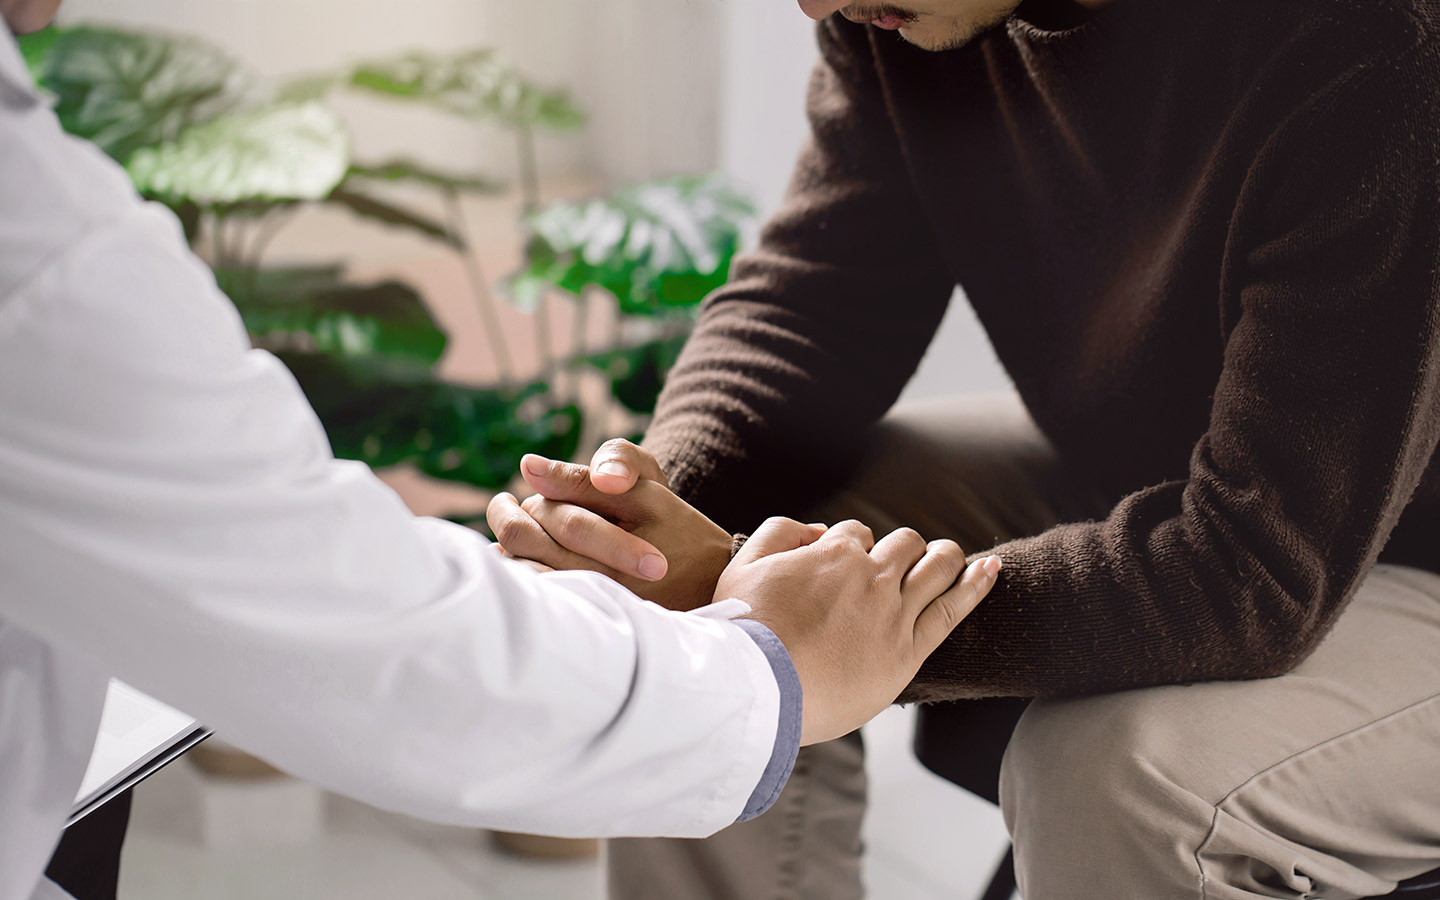 Foto: Ein Arzt hält einen Patienten mitfühlend die Hände.